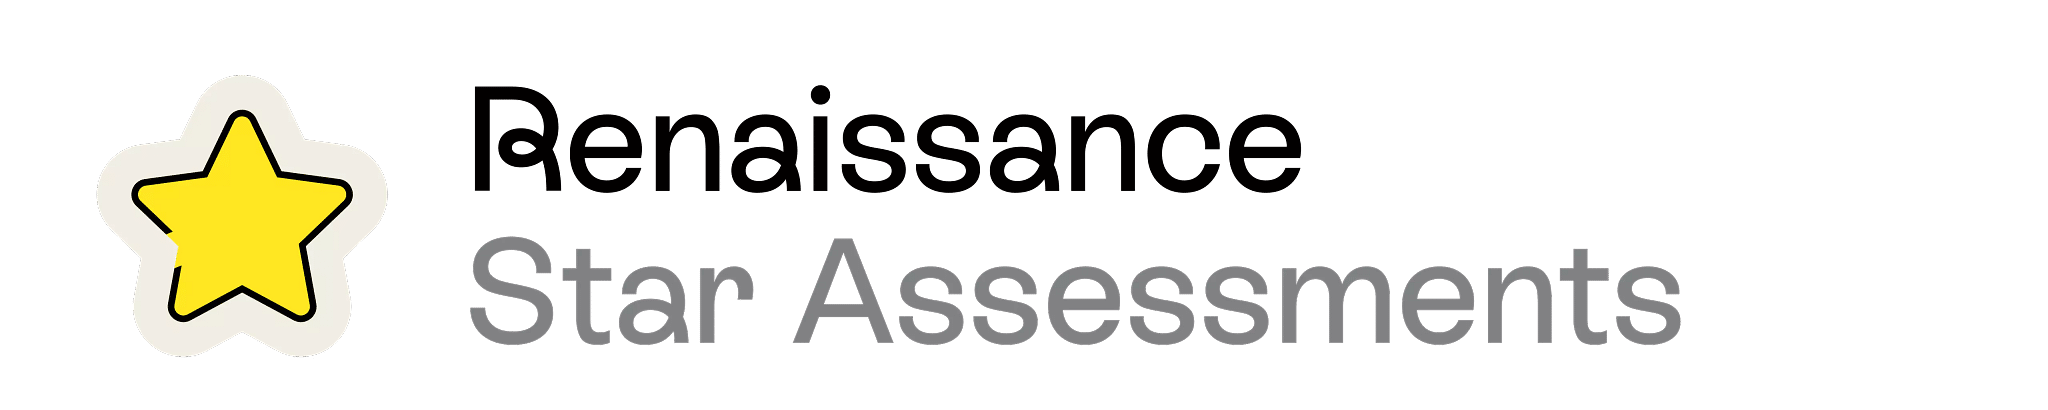 Renaissance-Star-Assessments-1